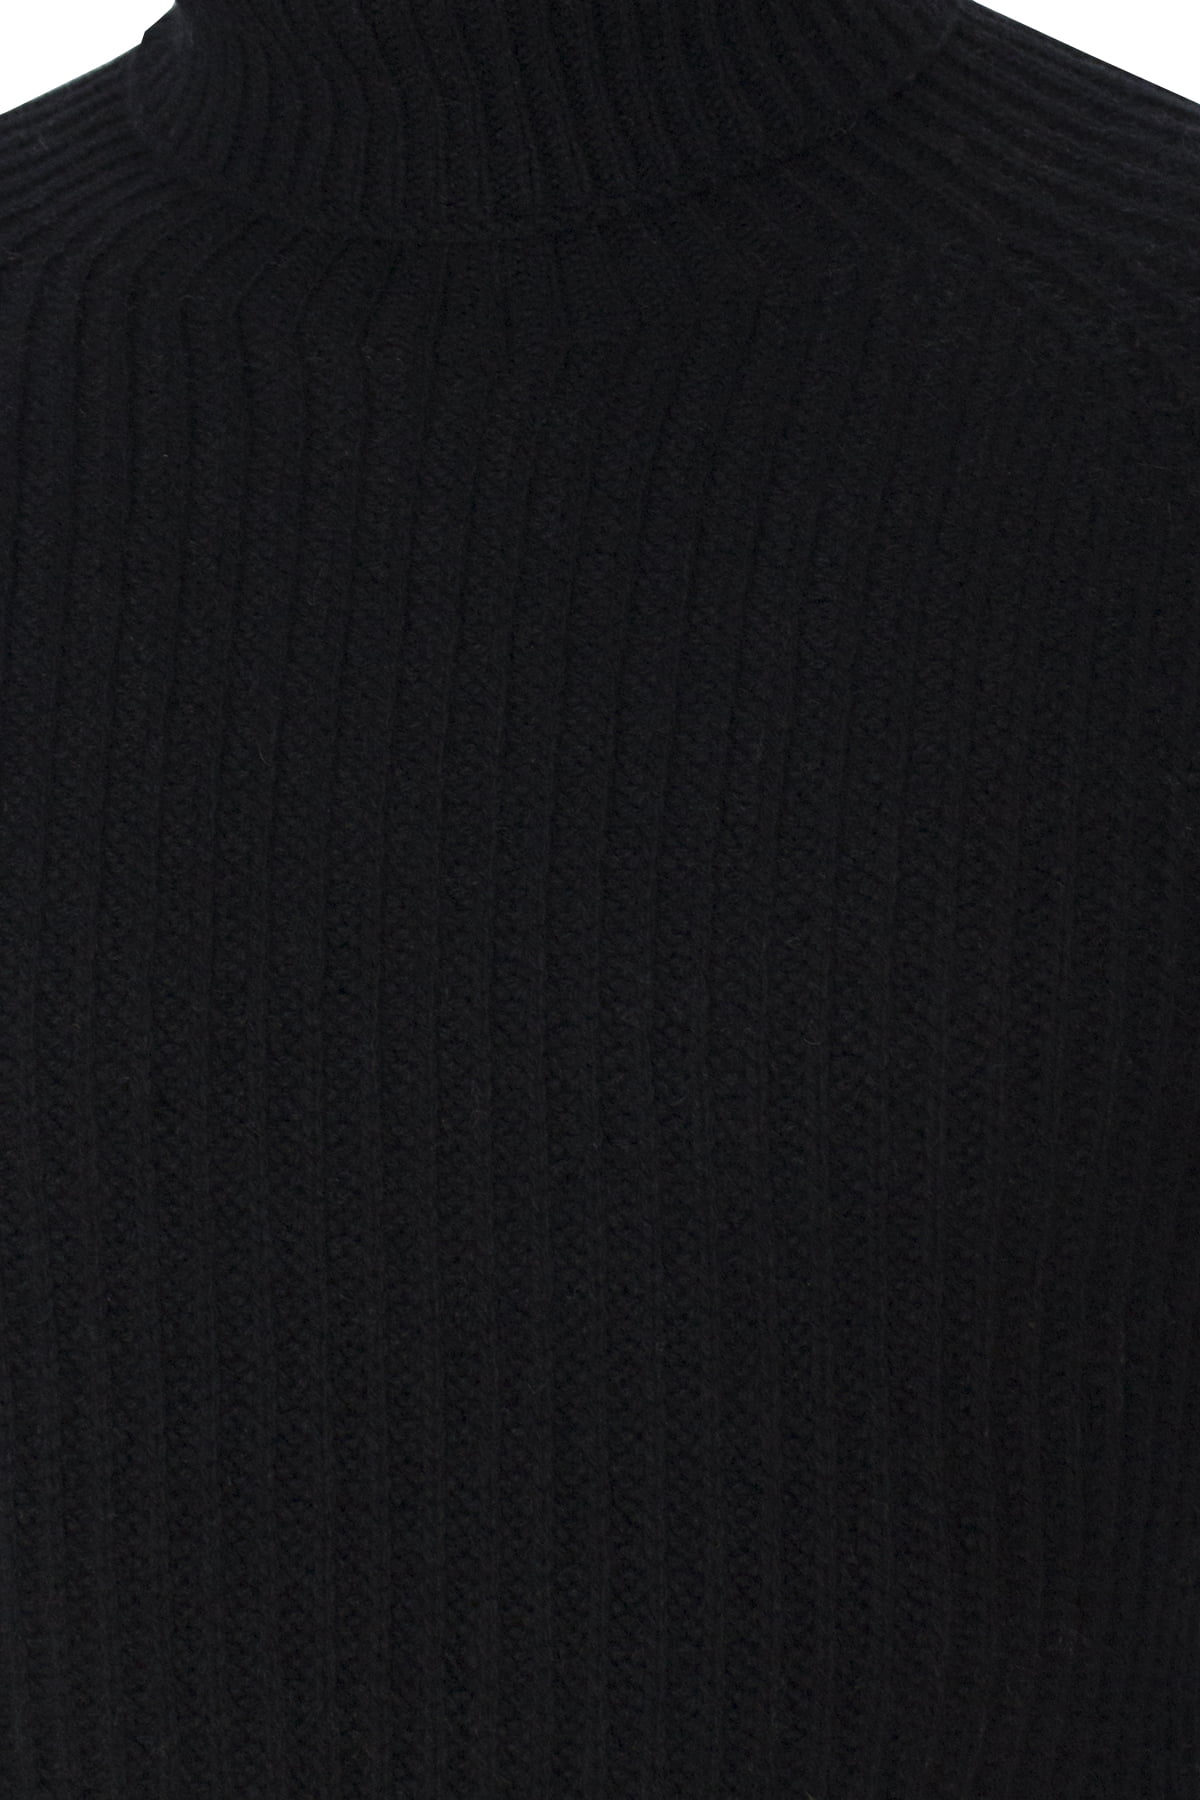 Maglione uomo collo alto nero in lana merinos a costa inglese slim fit made in italy